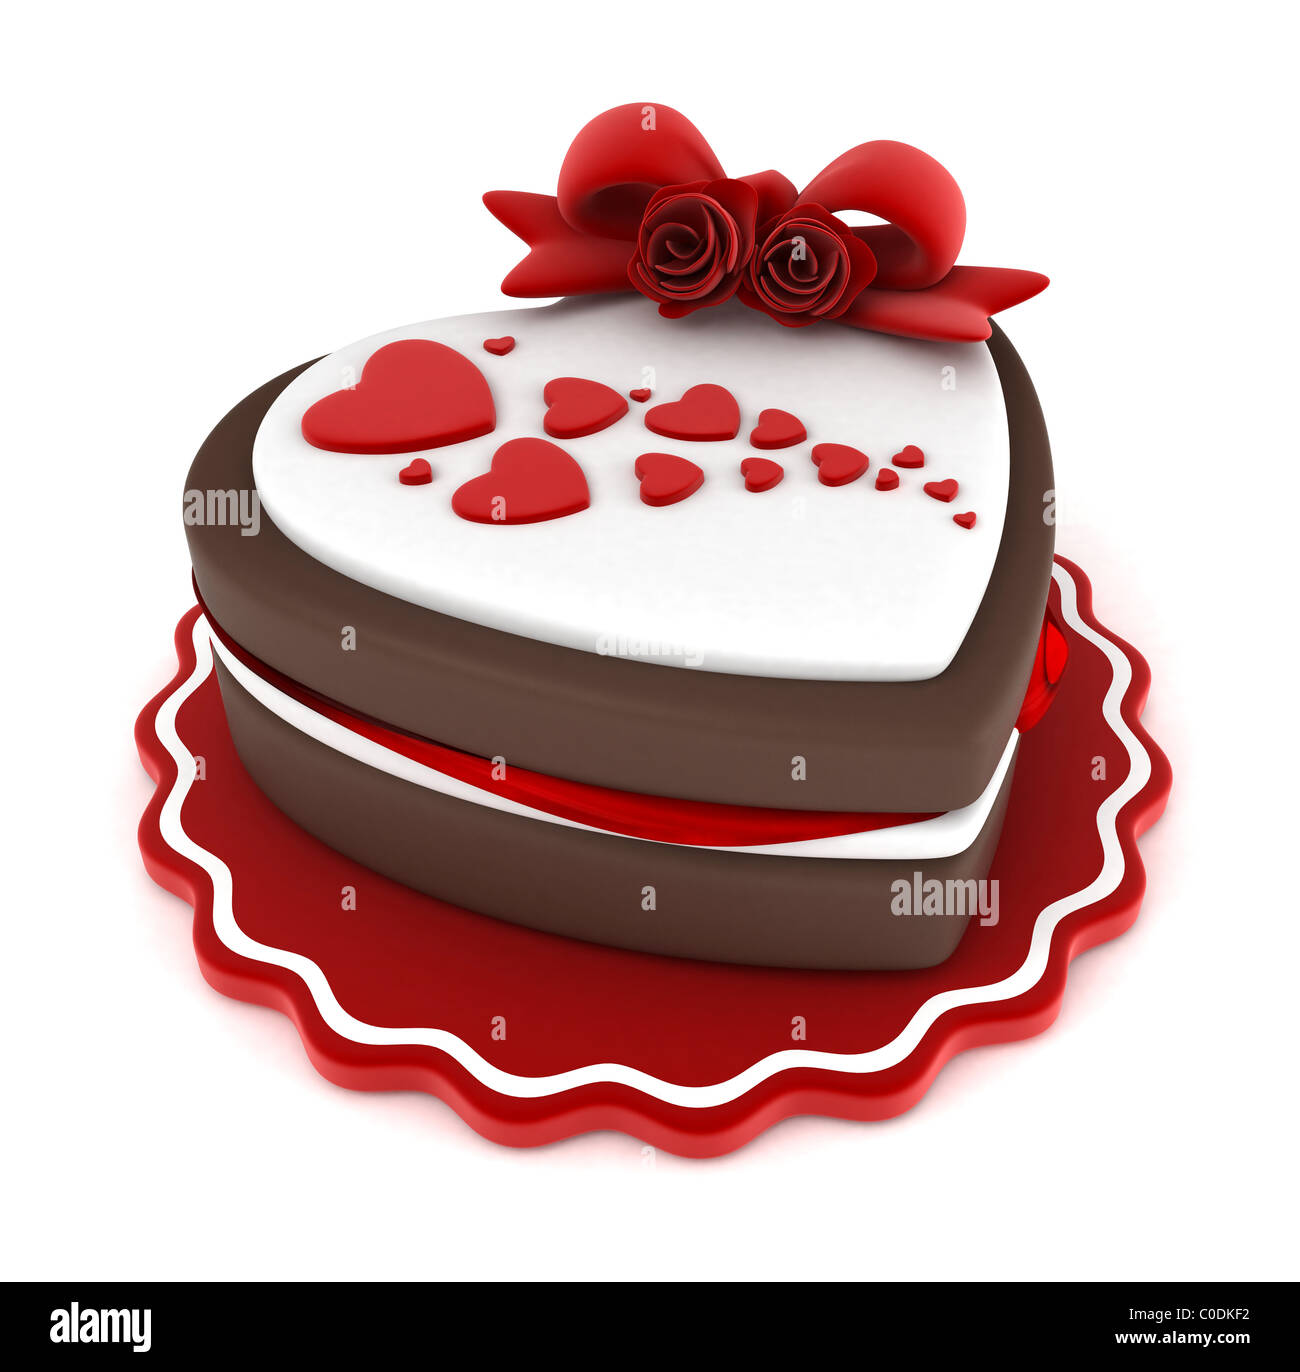 Red Velvet Love Heart Shaped Cake | Winni.in